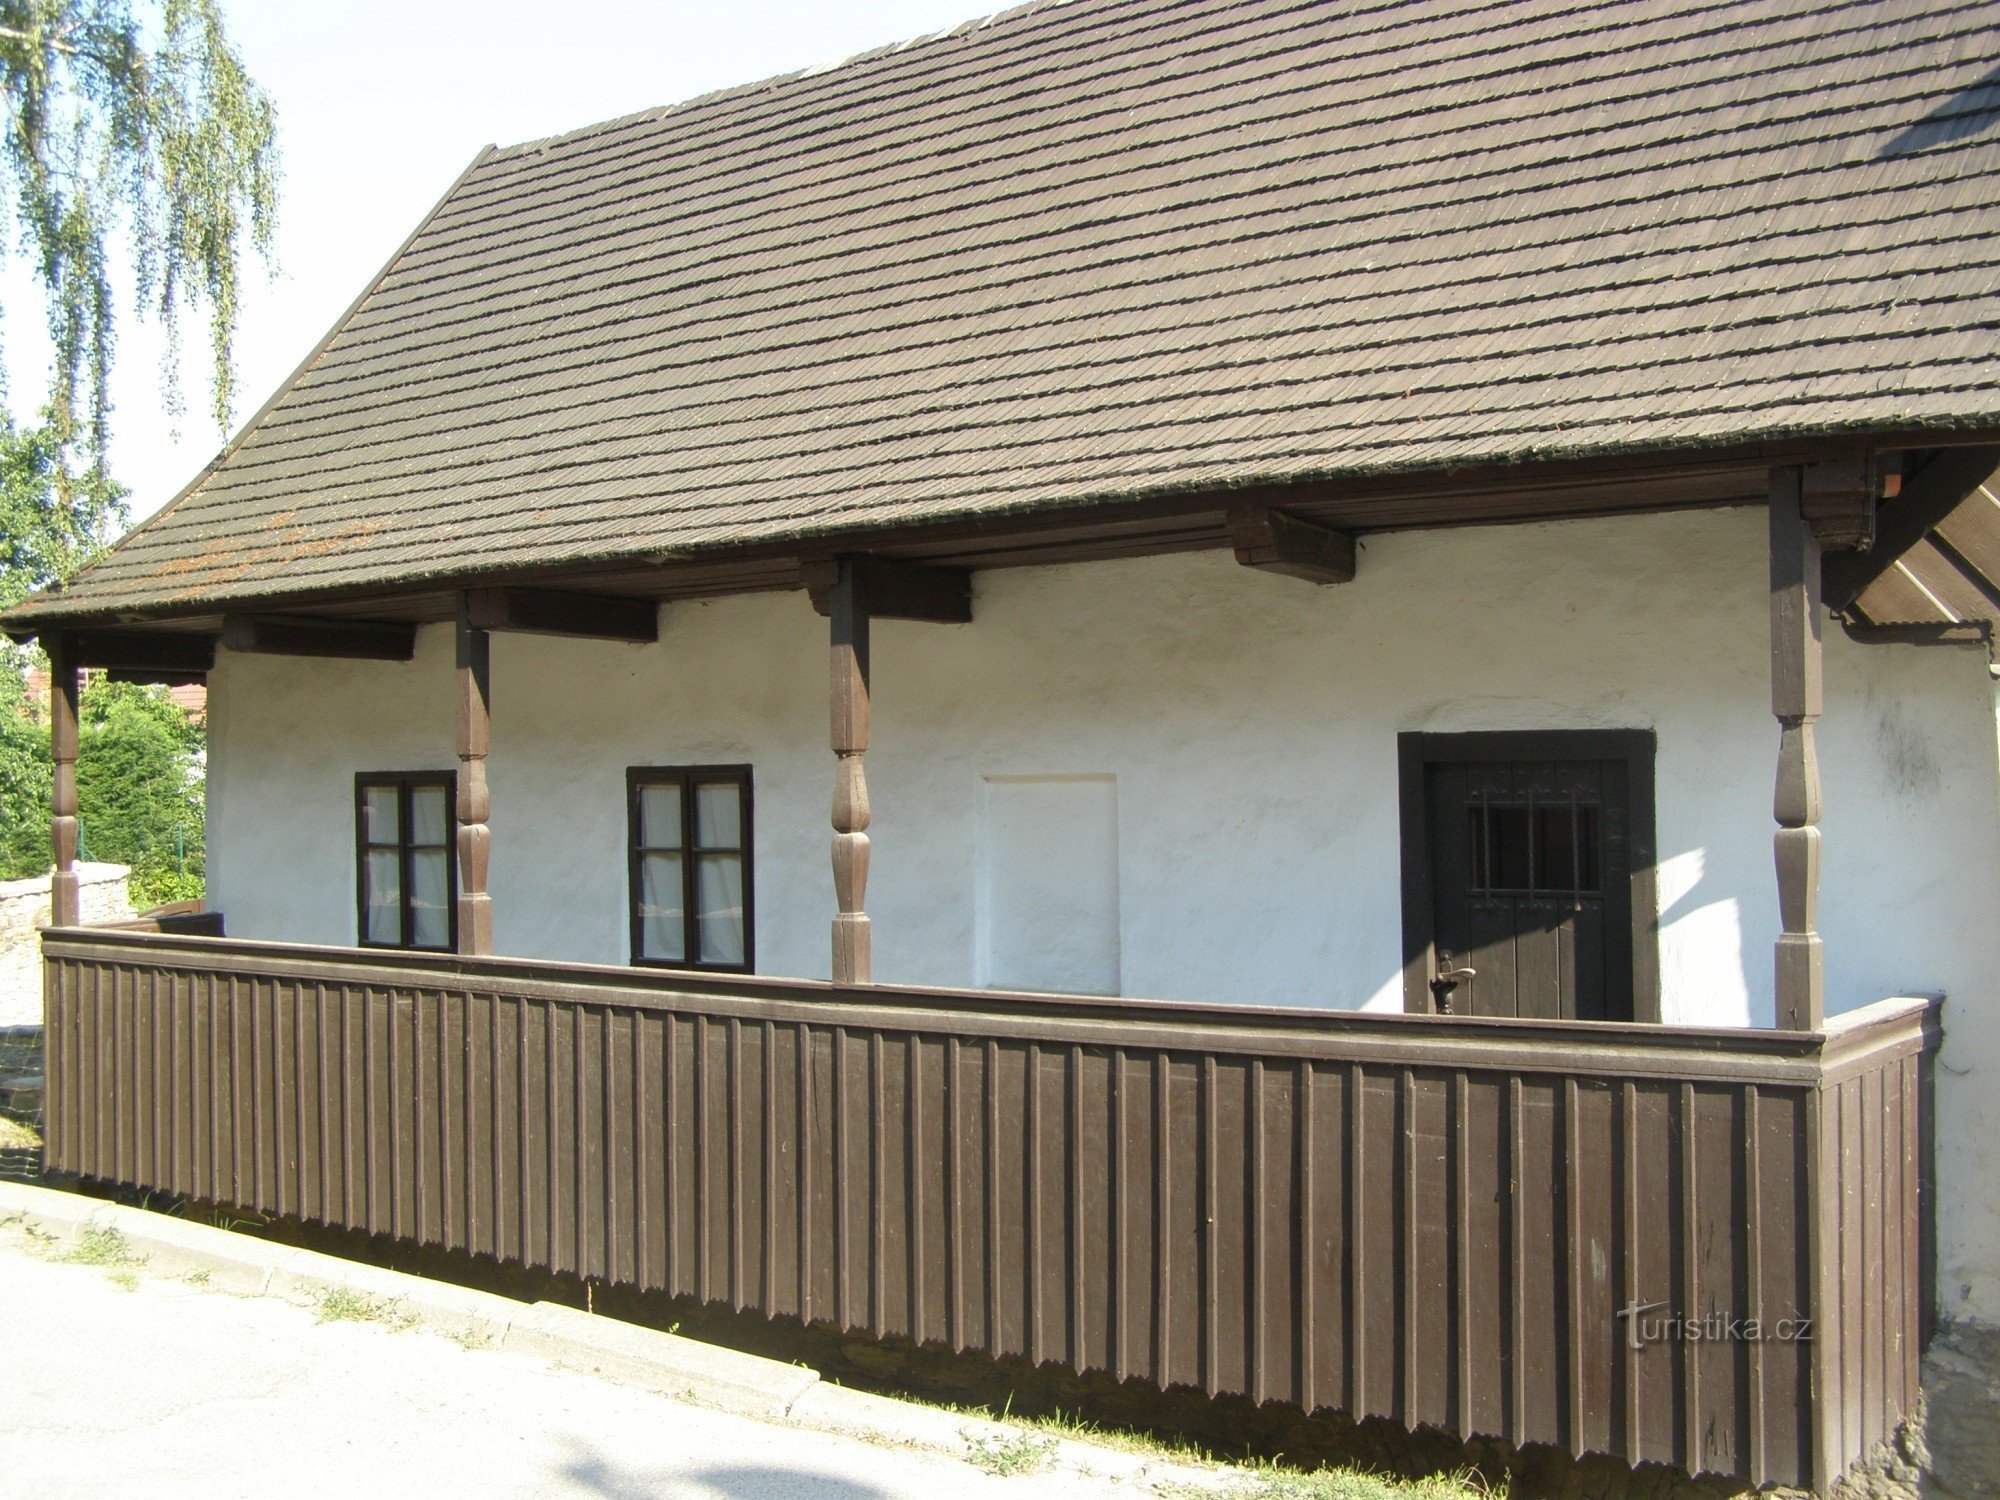 Dobruška - nơi sinh của FLVěk (Heka)